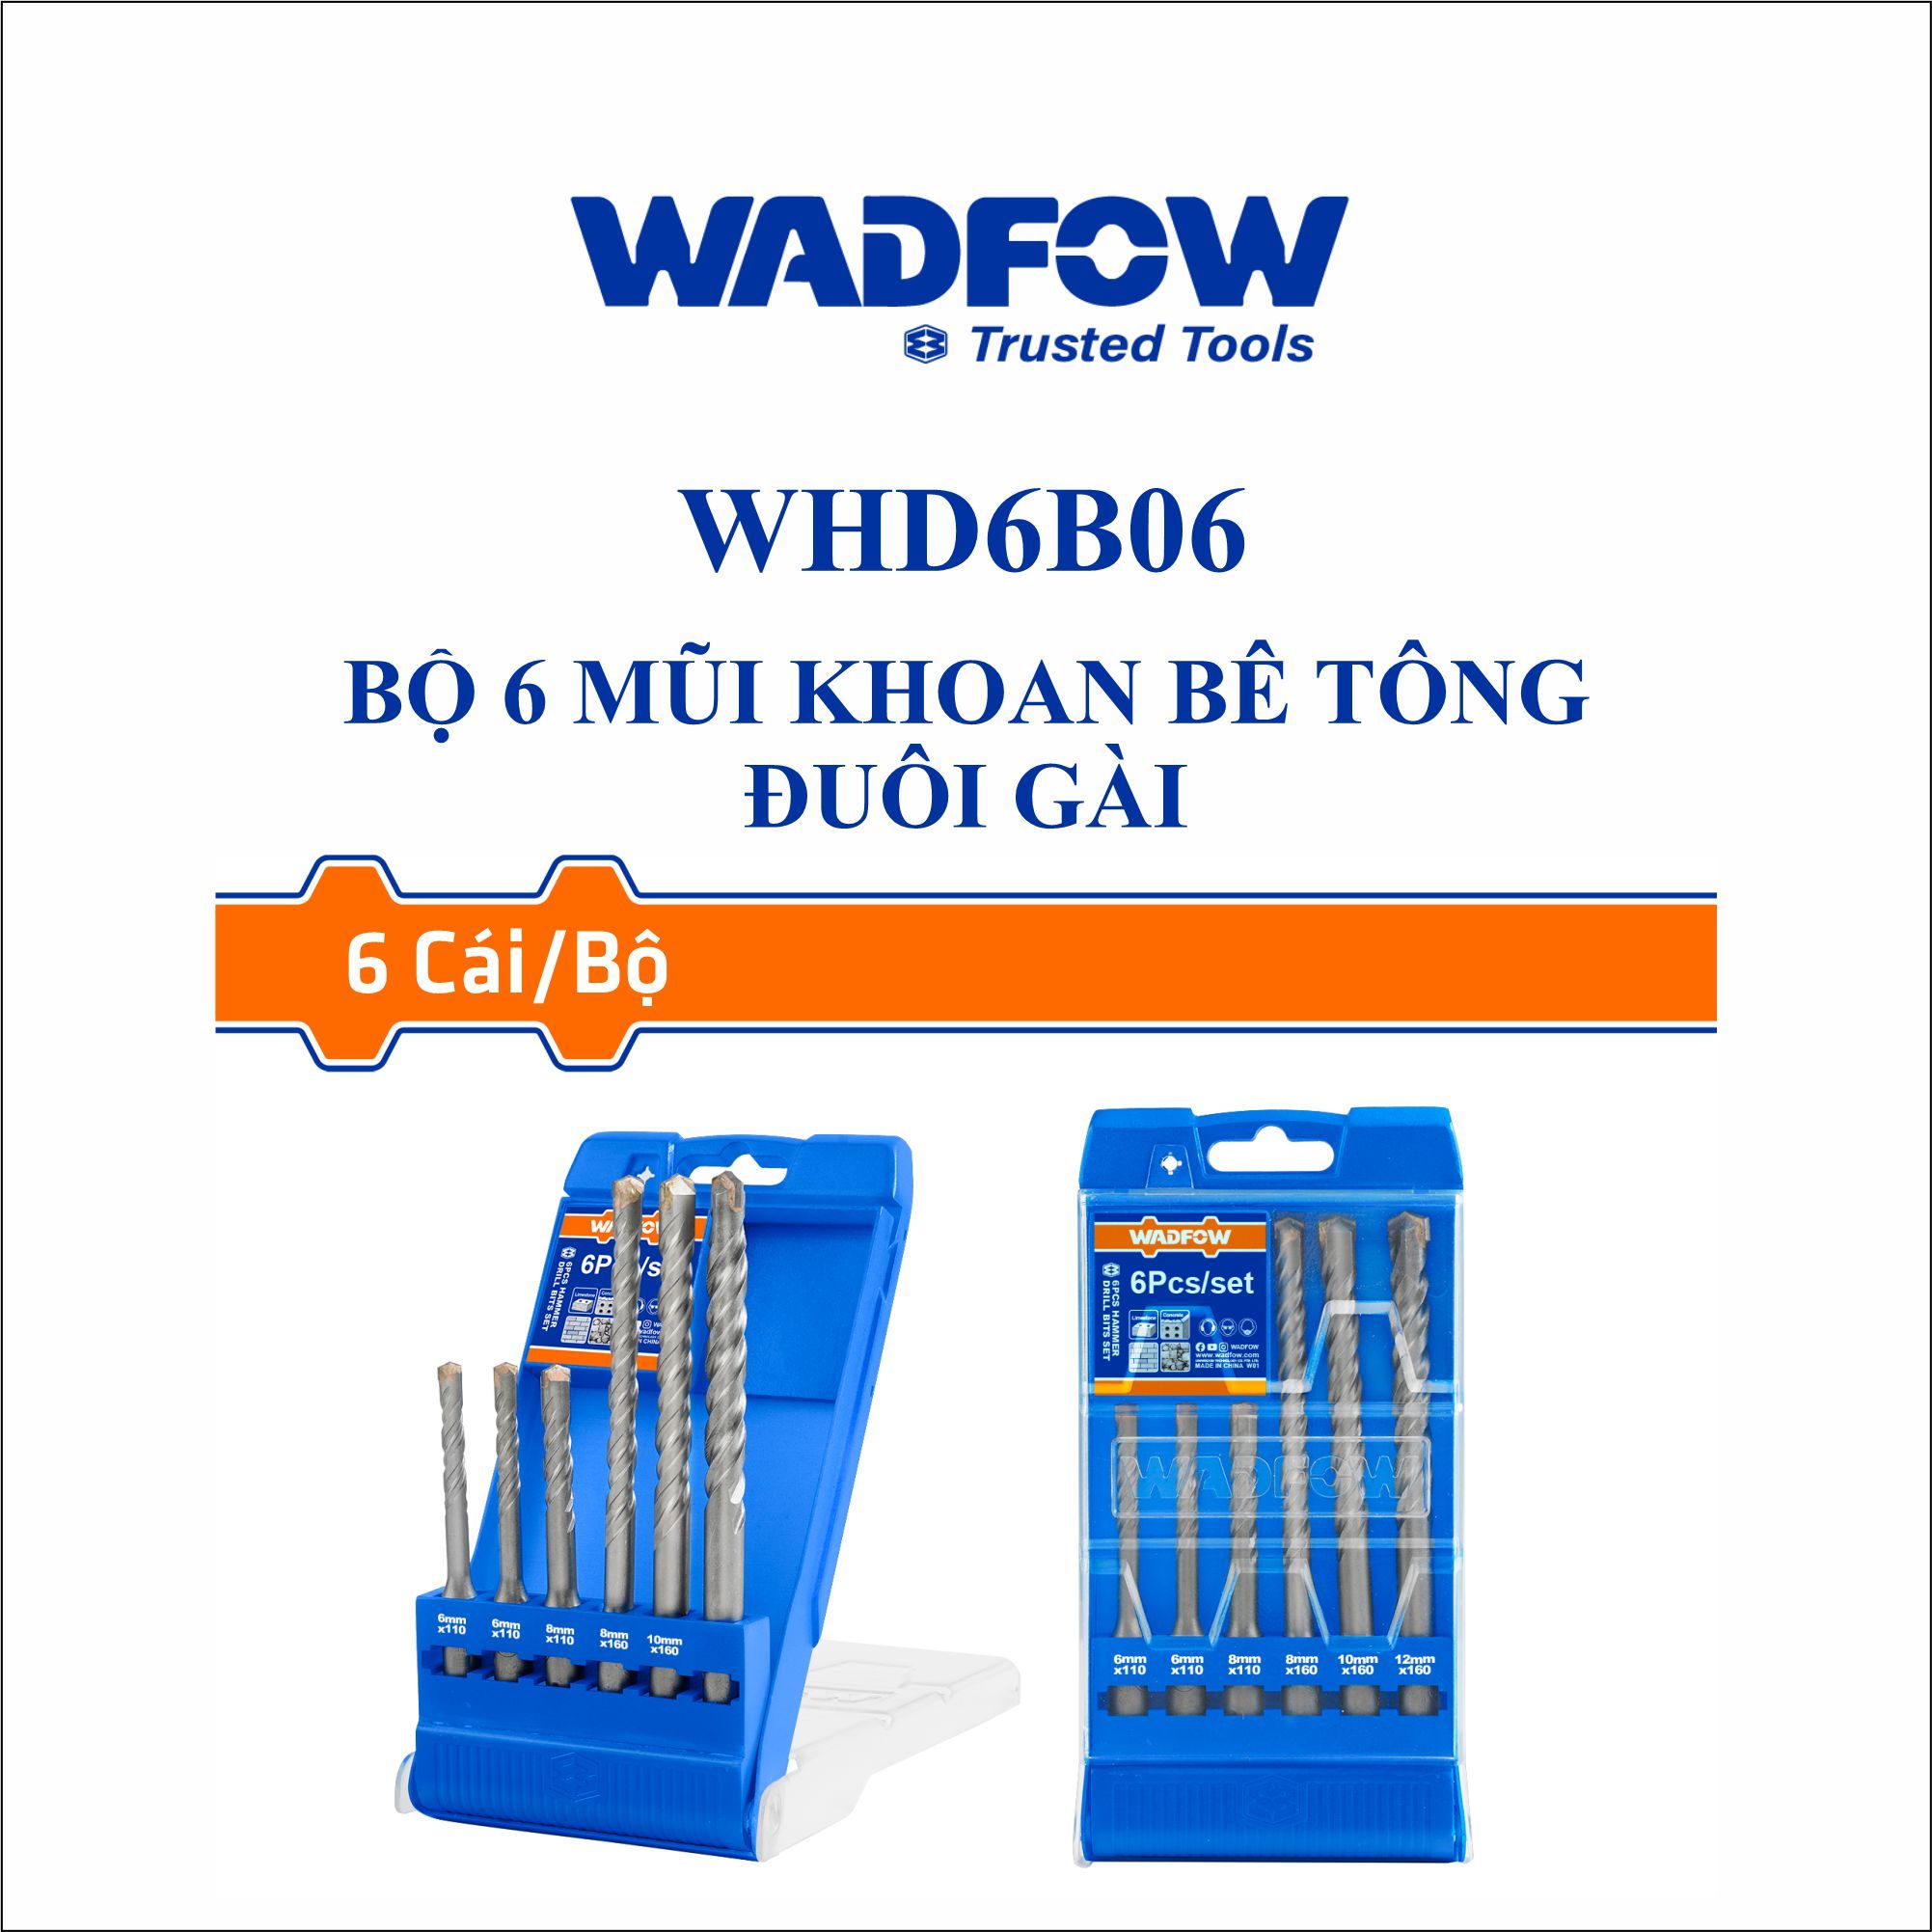  Bộ 6 Mũi khoan bê tông đuôi gài WADFOW WHD6B06 